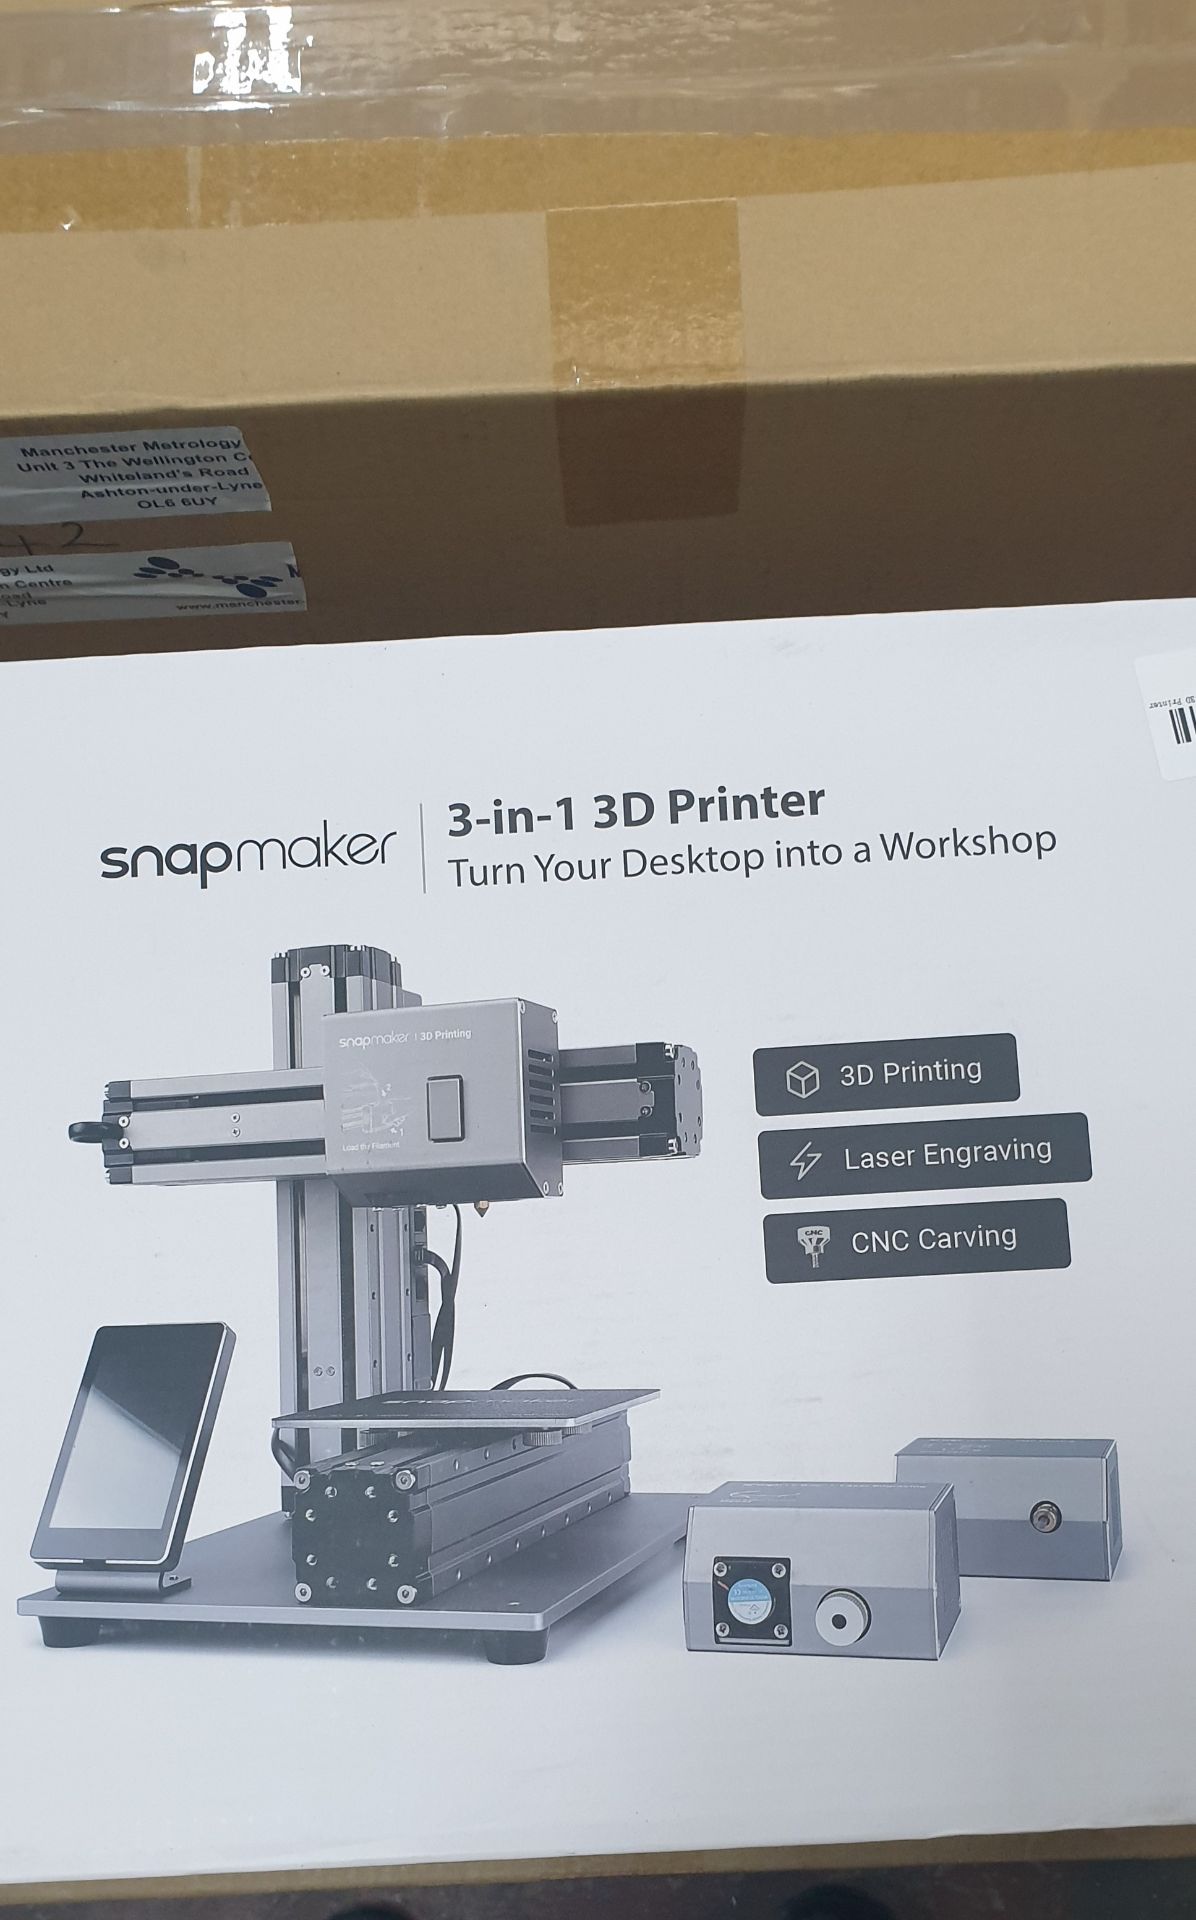 Snapmaker 1.0 3D Printer